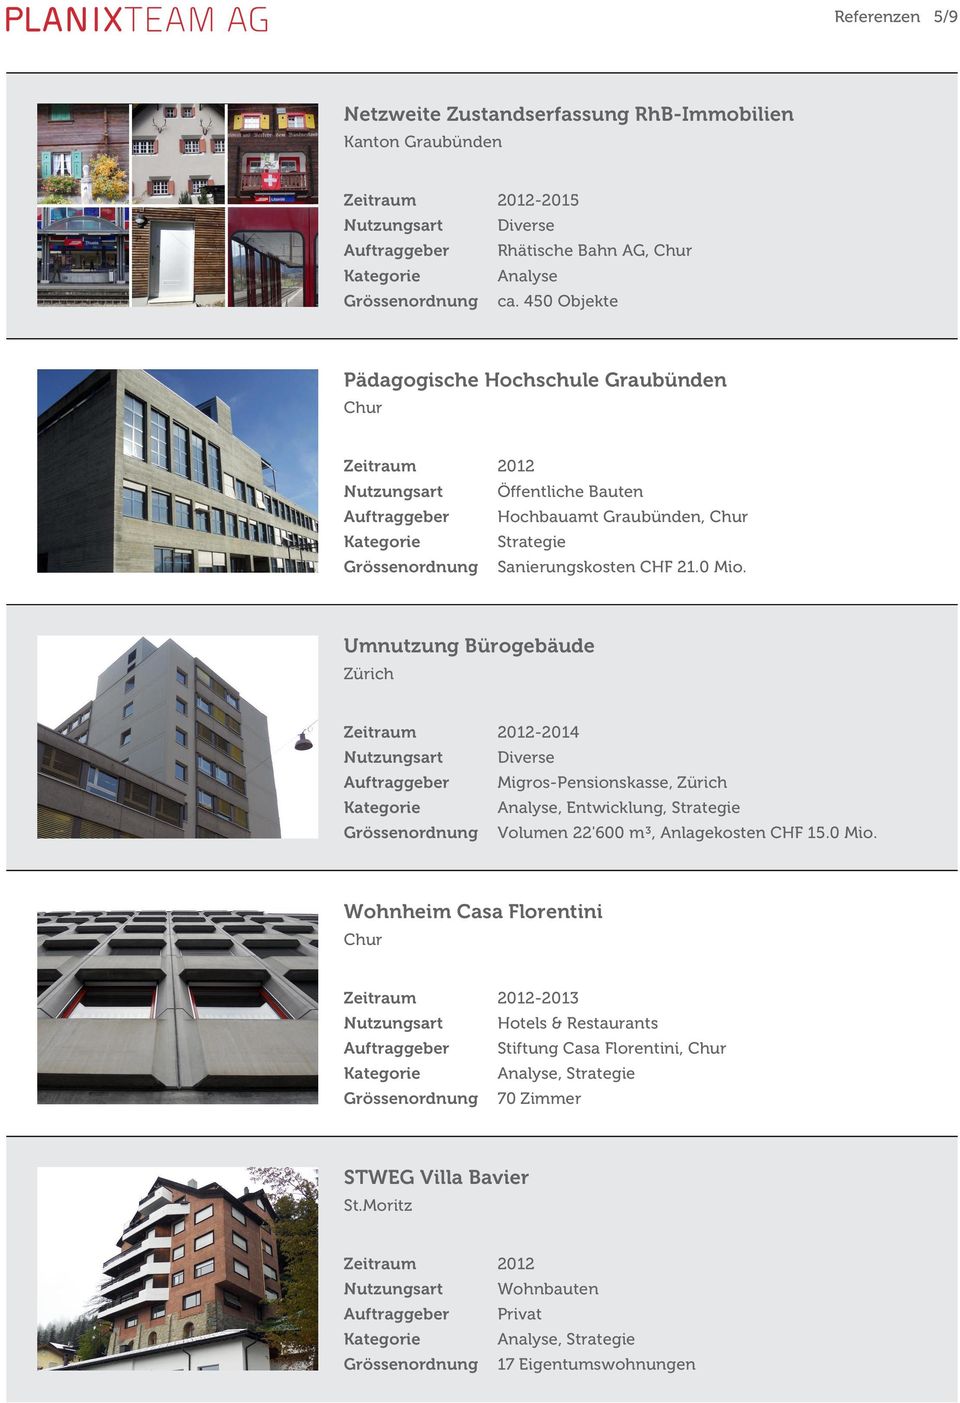 Umnutzung Bürogebäude 2012- Migros-Pensionskasse, Analyse, Entwicklung, Strategie Volumen 22'600 m³, Anlagekosten CHF 15.